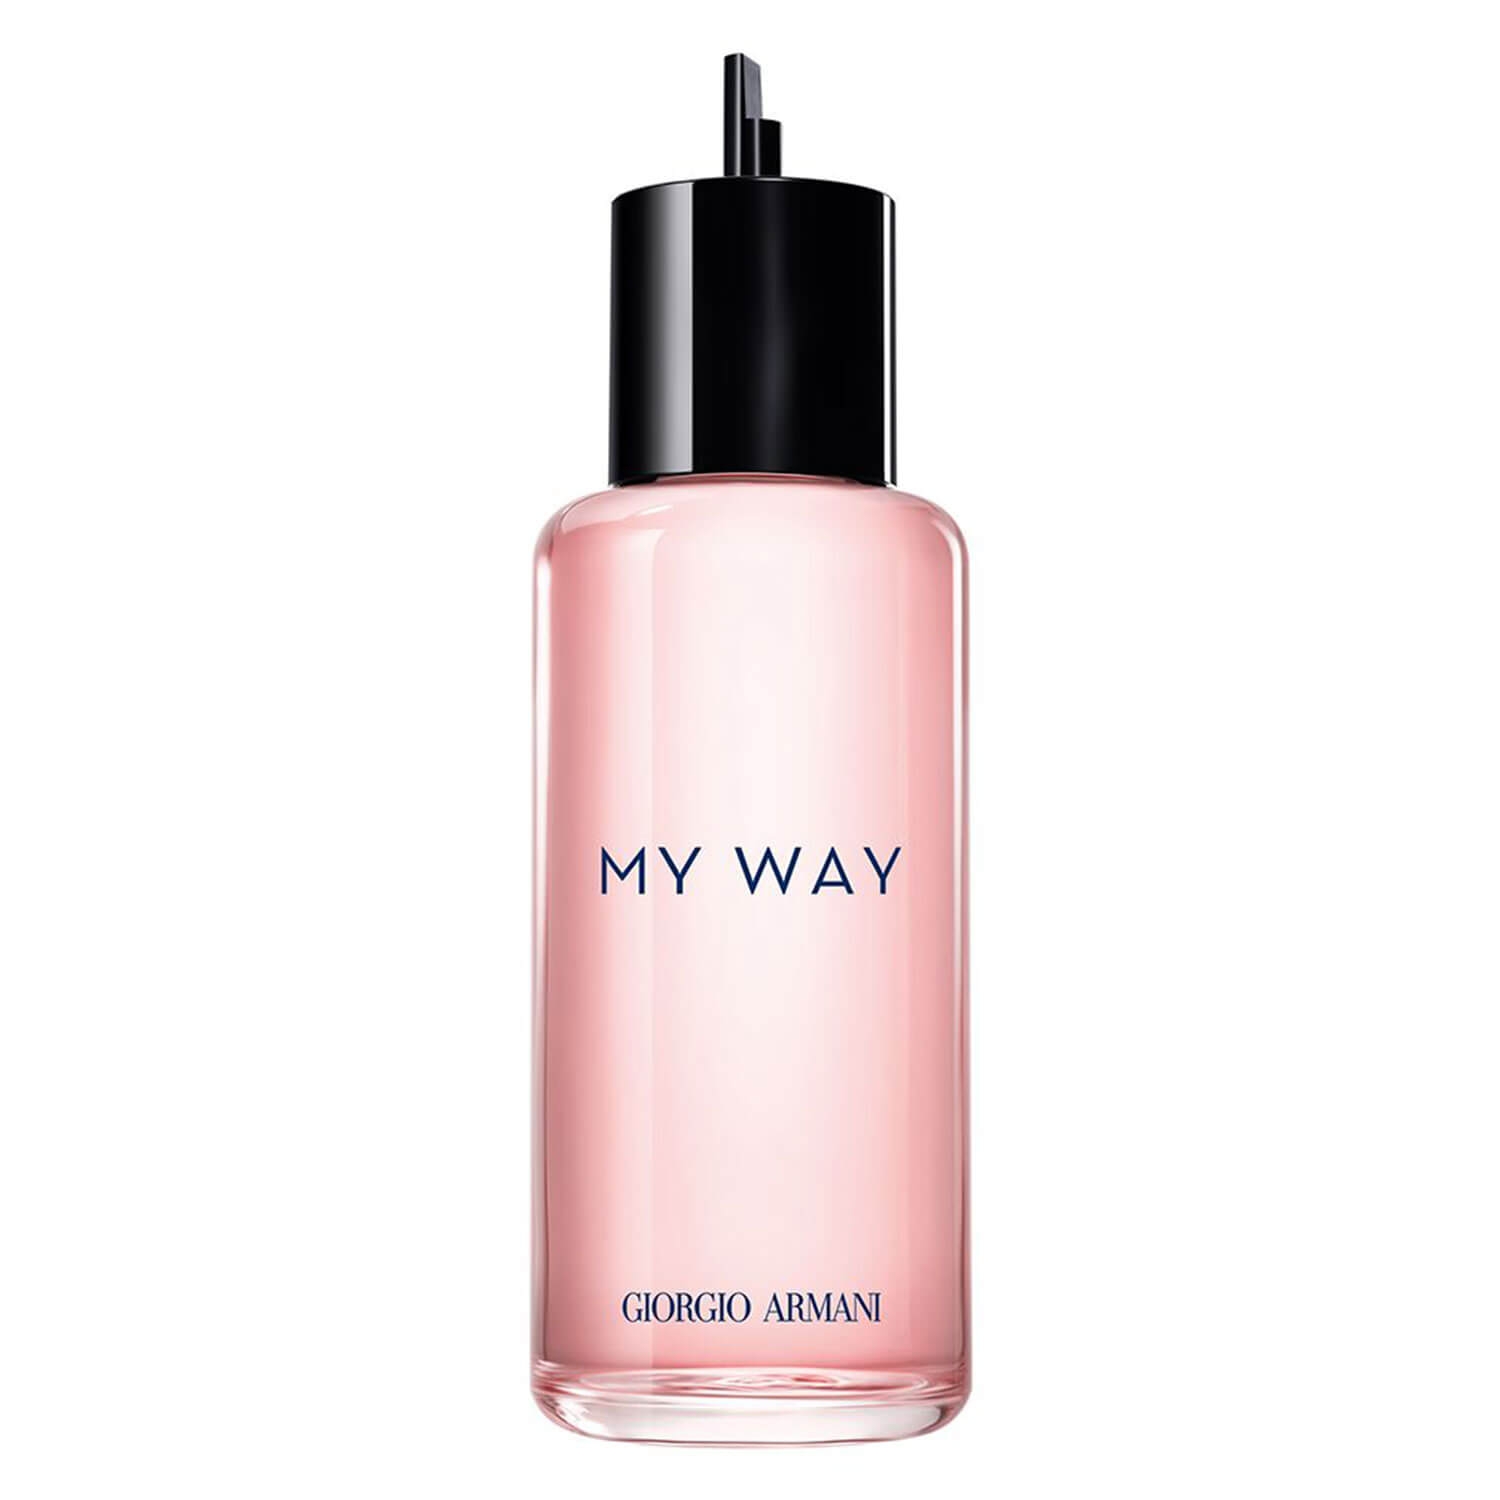 Produktbild von MY WAY - Eau de Parfum Refill